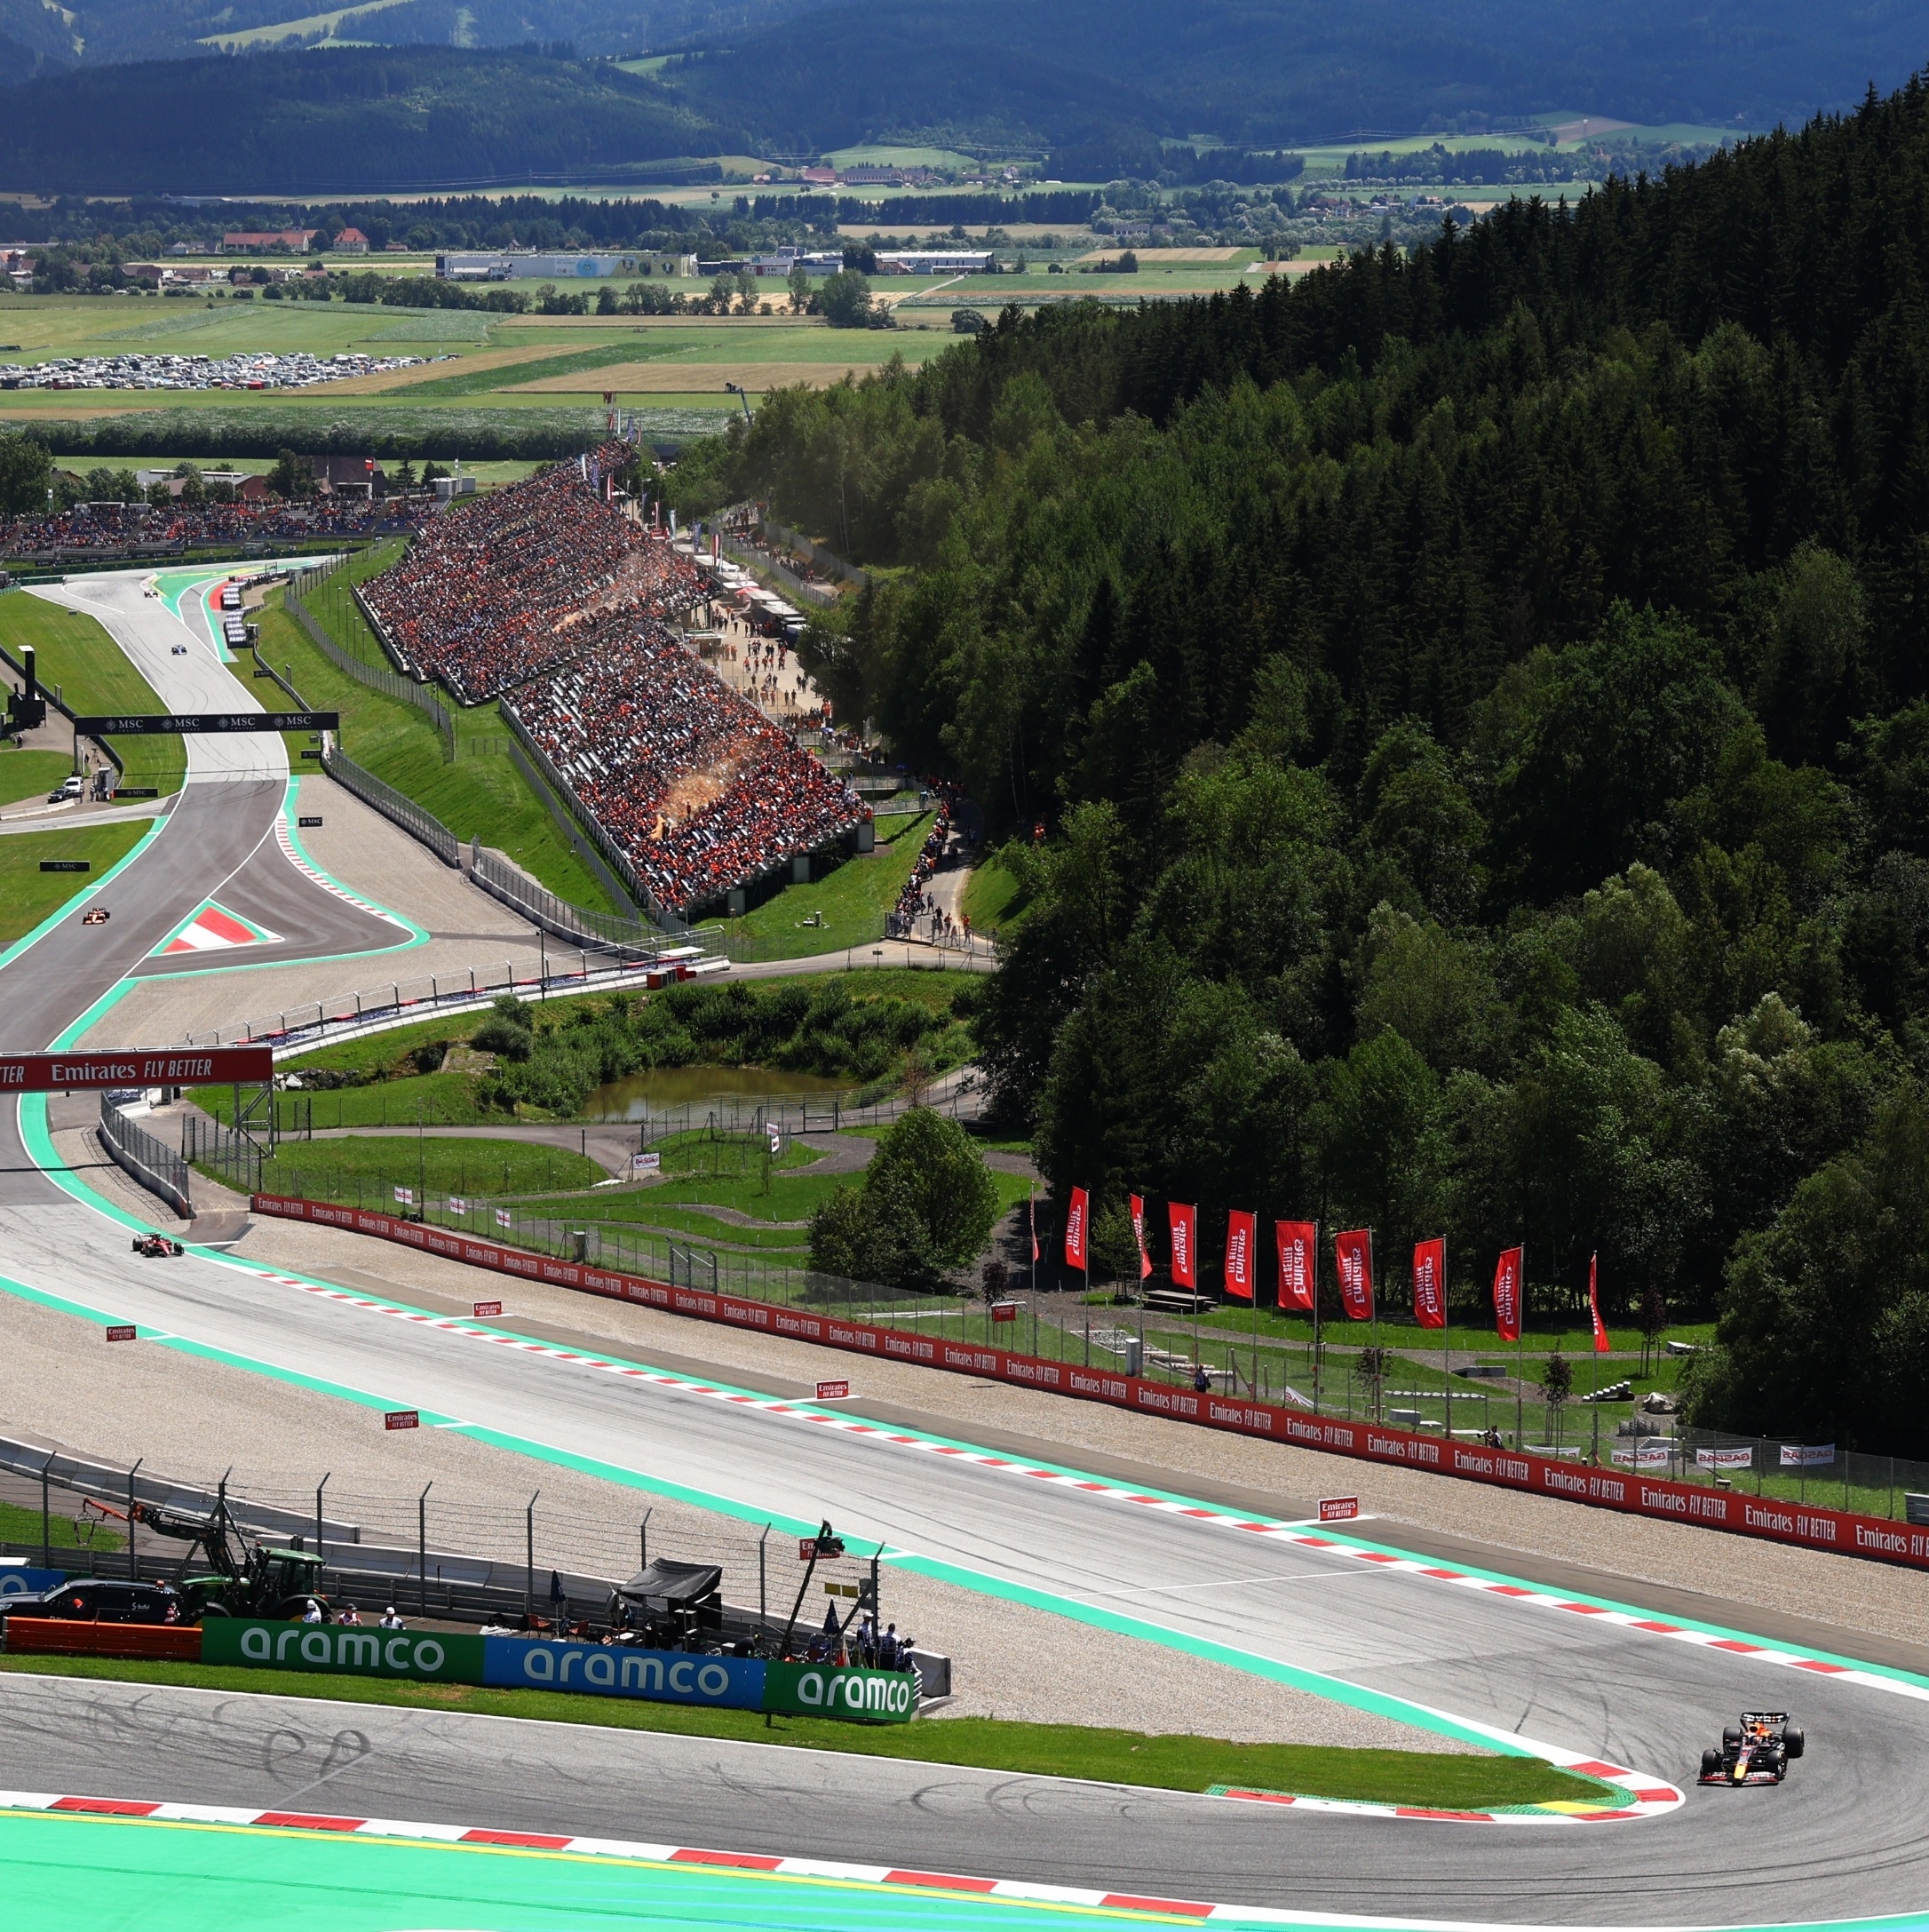 F1: Verstappen lidera primeiro treino do GP da Áustria